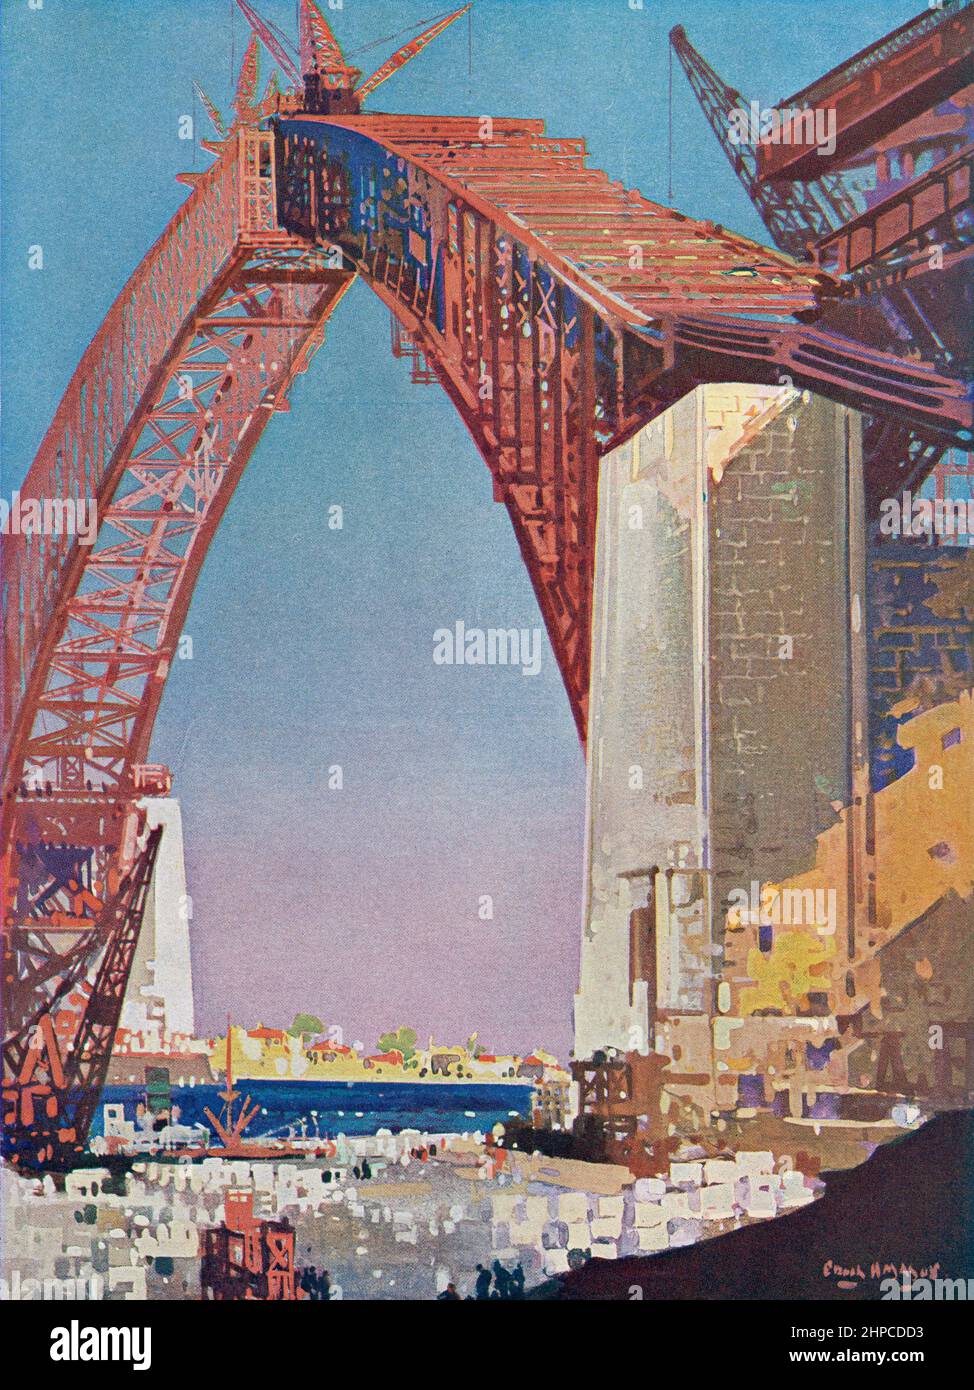 Completando el arco del puente del puerto de Sídney, Australia. Del libro de la ciencia de la maravilla, publicado 1930. Foto de stock